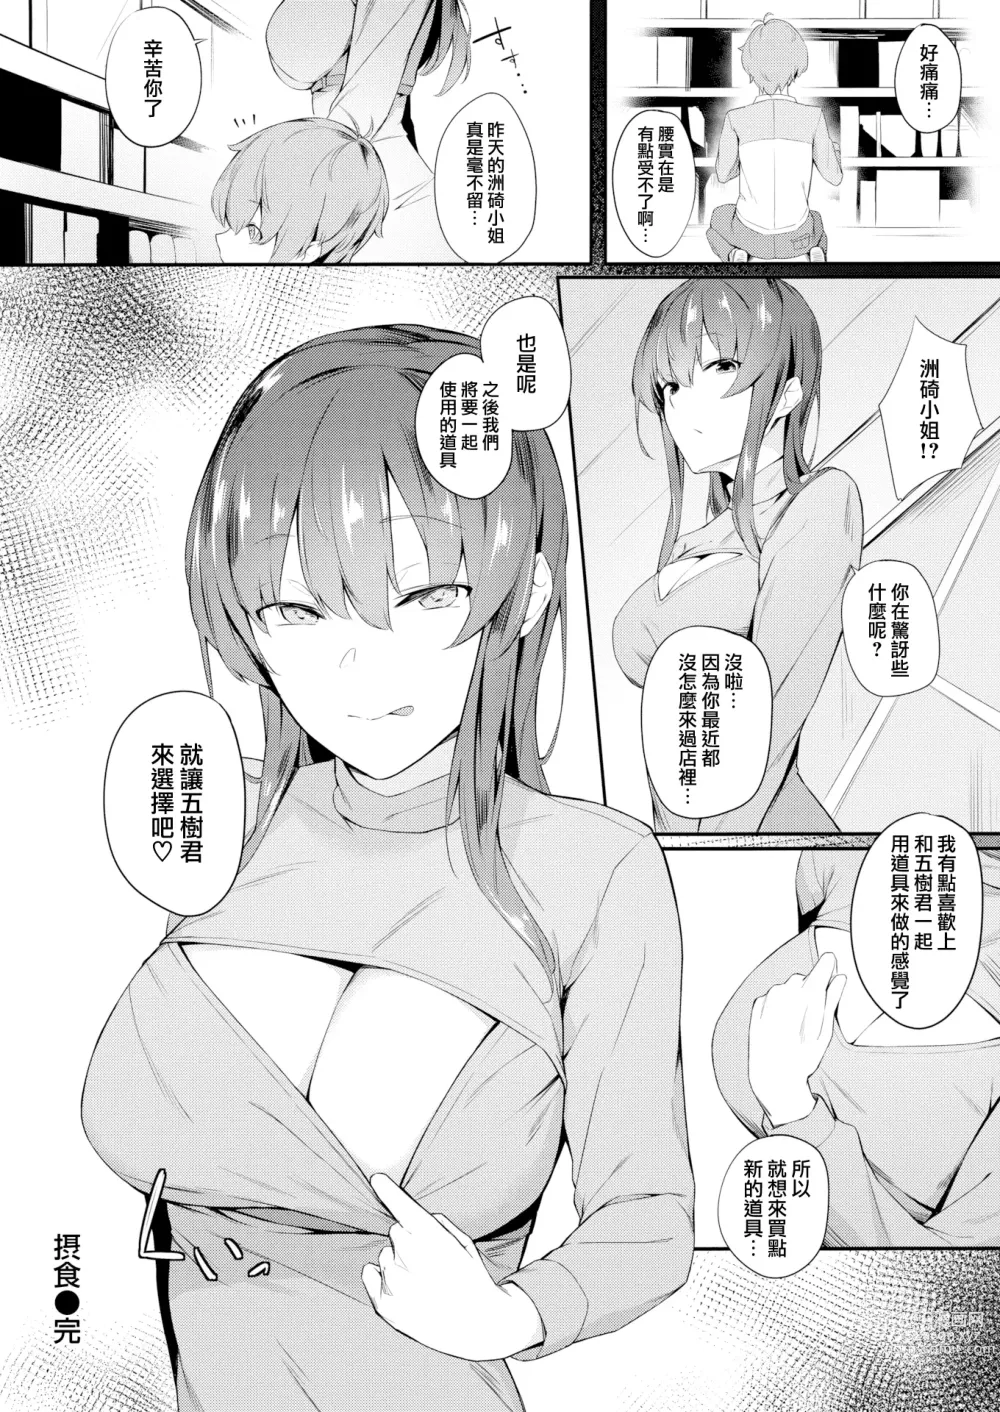 Page 19 of manga Sesshoku